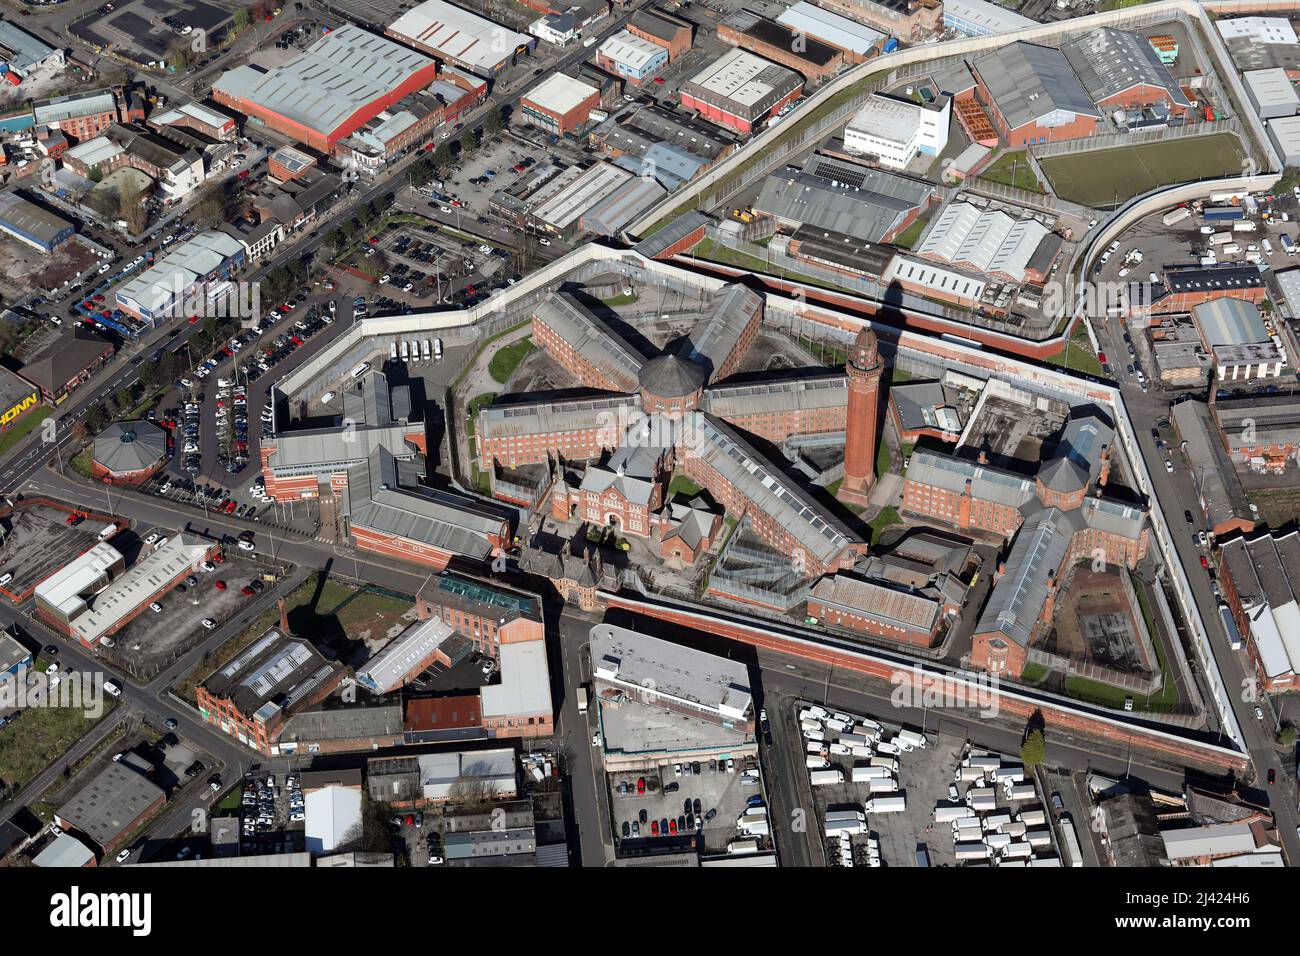 Vue aérienne de la prison de Manchester, HMP Manchester, anciennement connue sous le nom de Strangways Banque D'Images